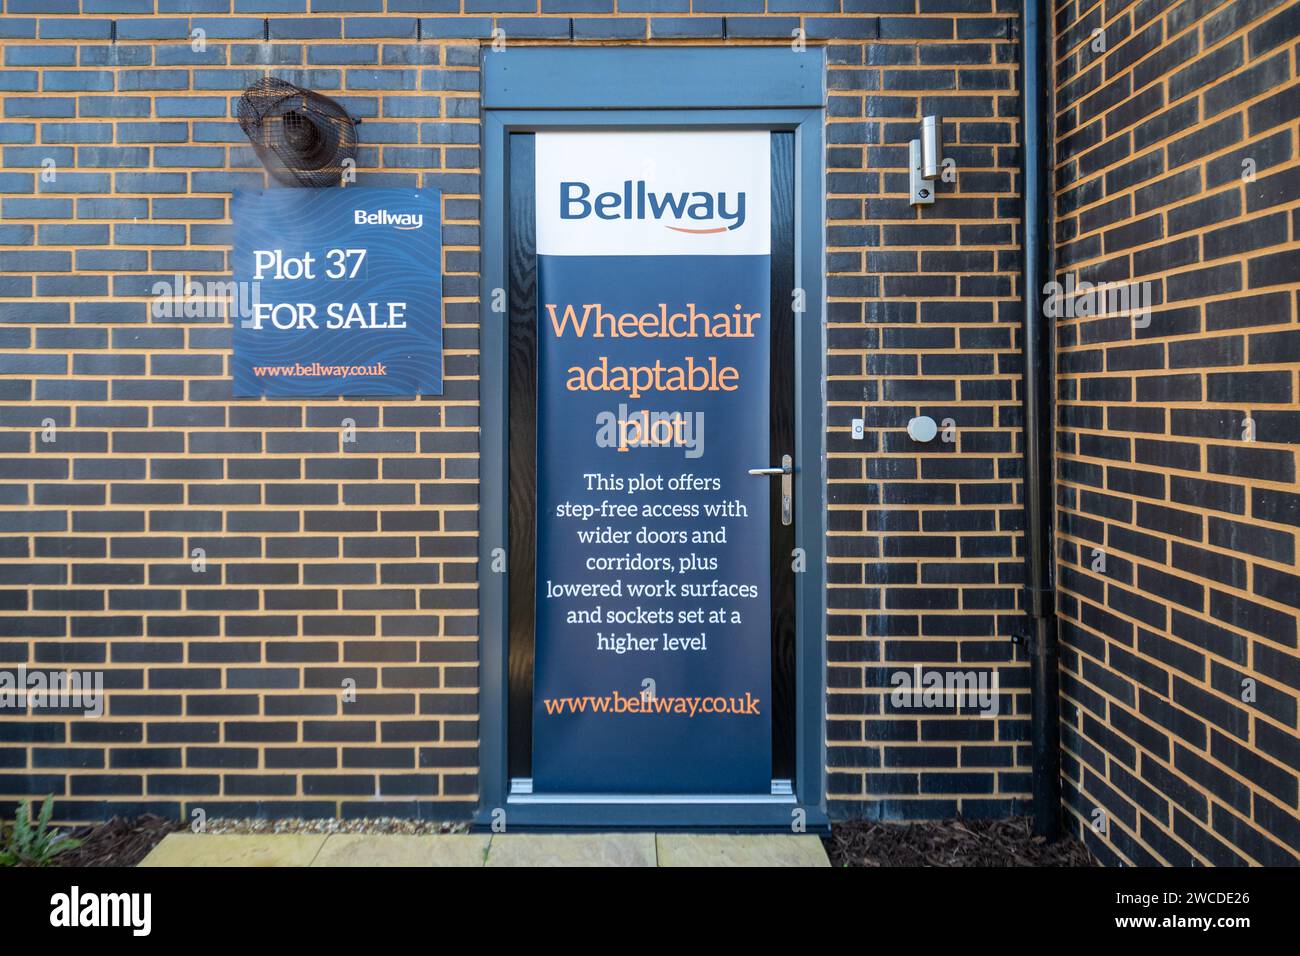 Terrain adaptable en fauteuil roulant annoncé par Bellway Homes développeur sur un appartement au rez-de-chaussée ou un appartement dans un nouveau développement, Angleterre, Royaume-Uni Banque D'Images